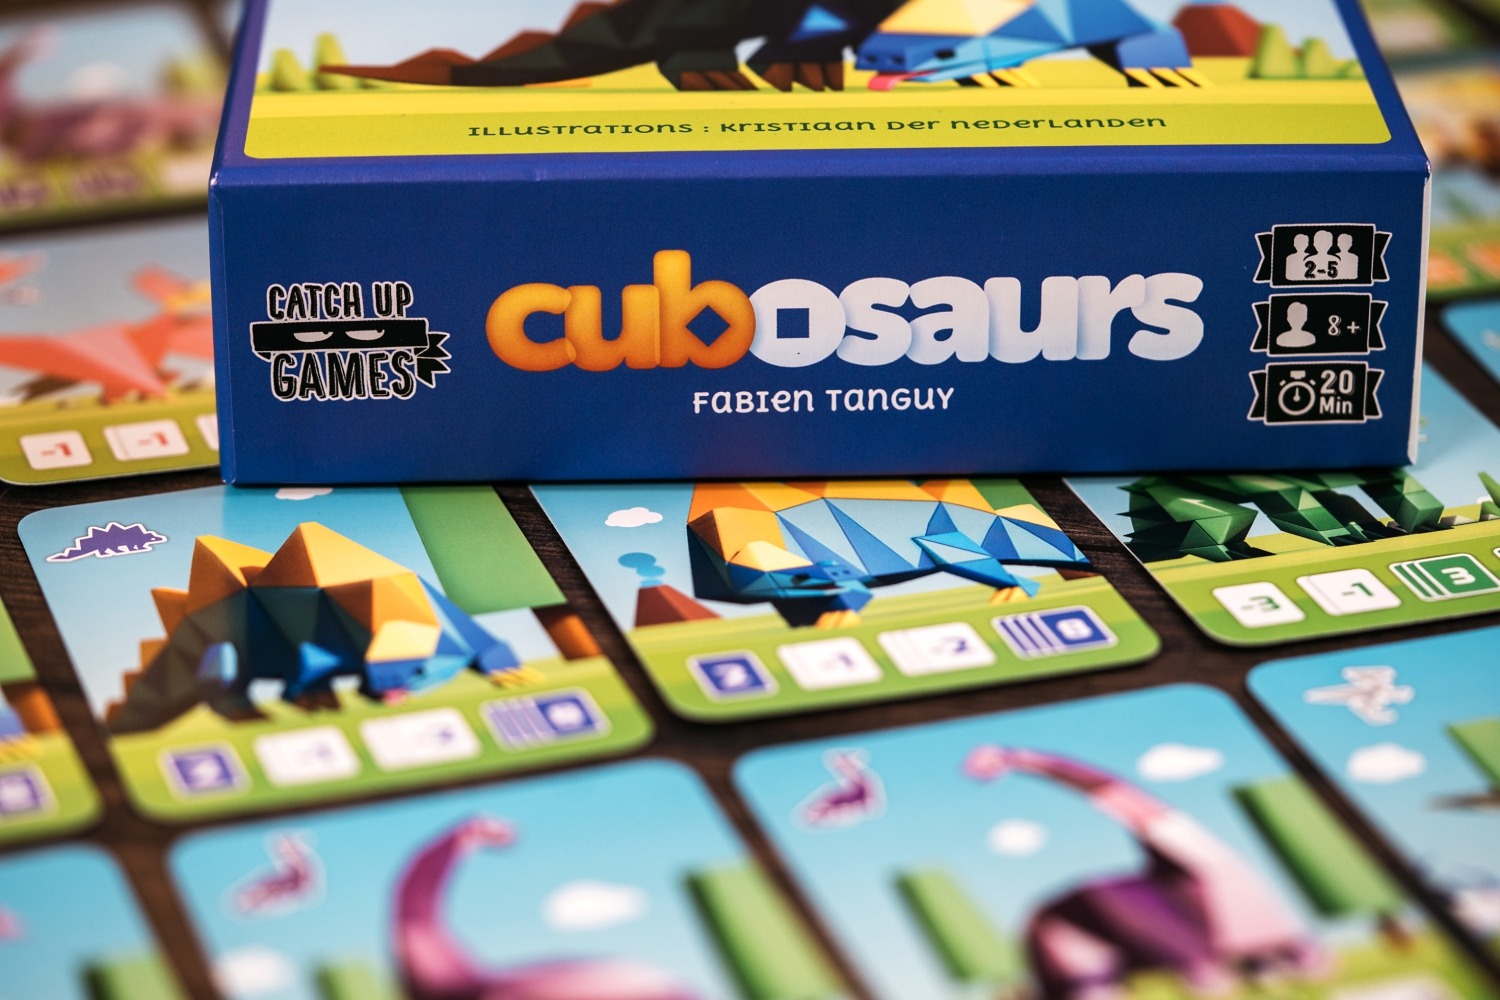 Cubosaurs catch up games jeu de société boargame 